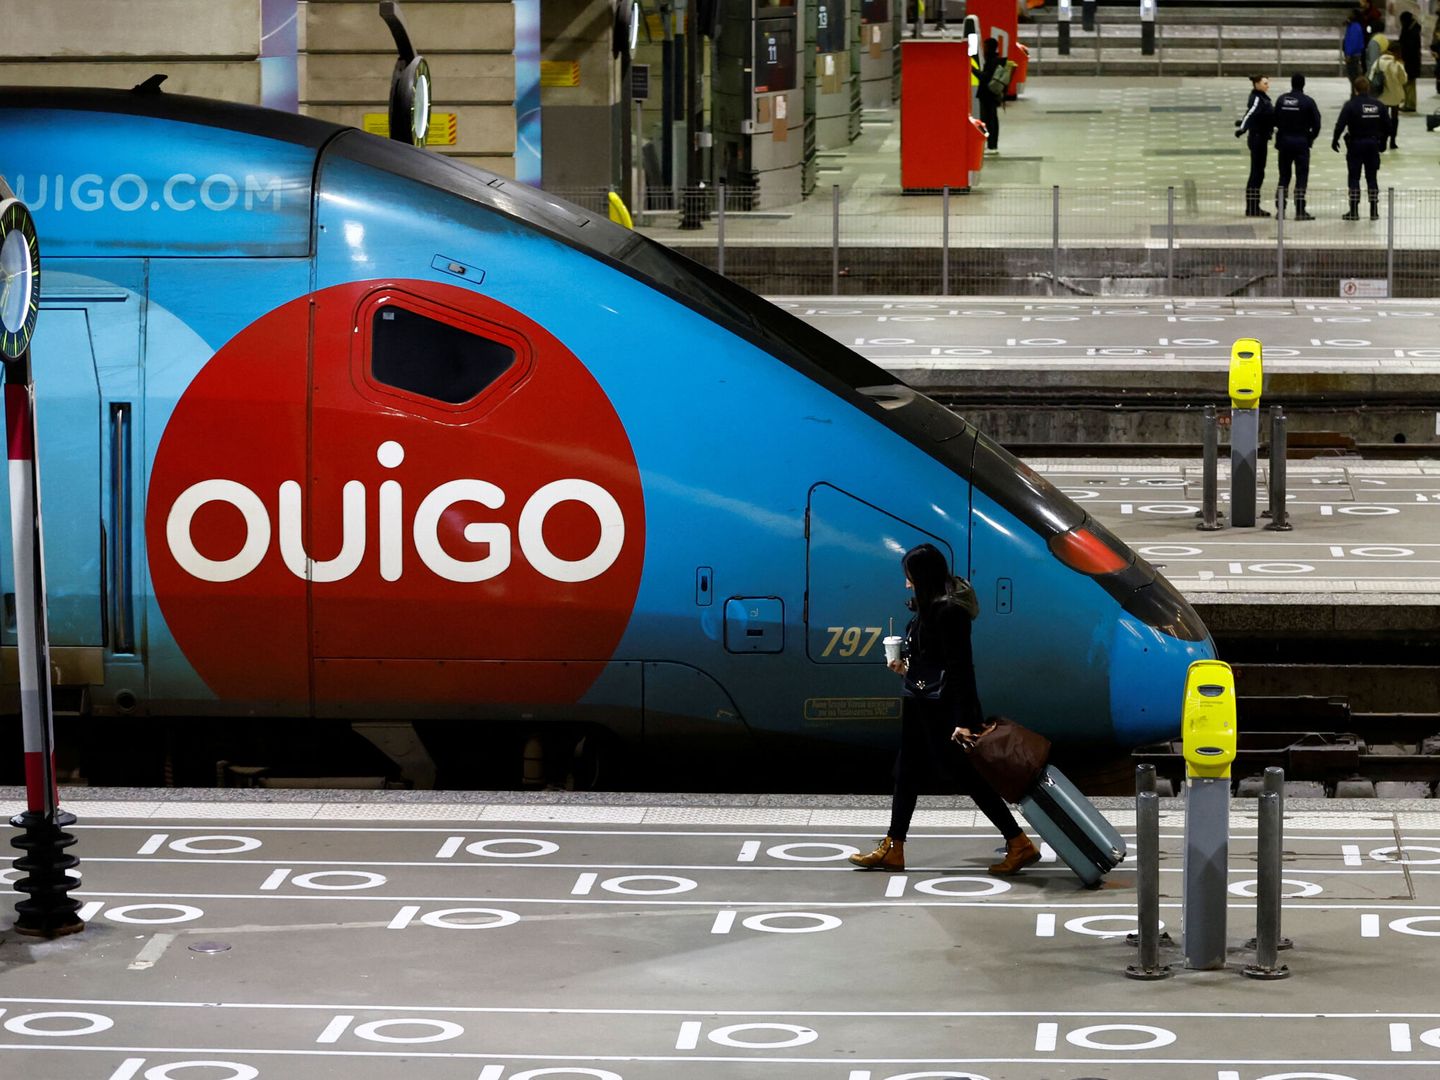 Tren de TGV Ouigo de alta velocidad. (Reuters/Gonzalo Fuentes)